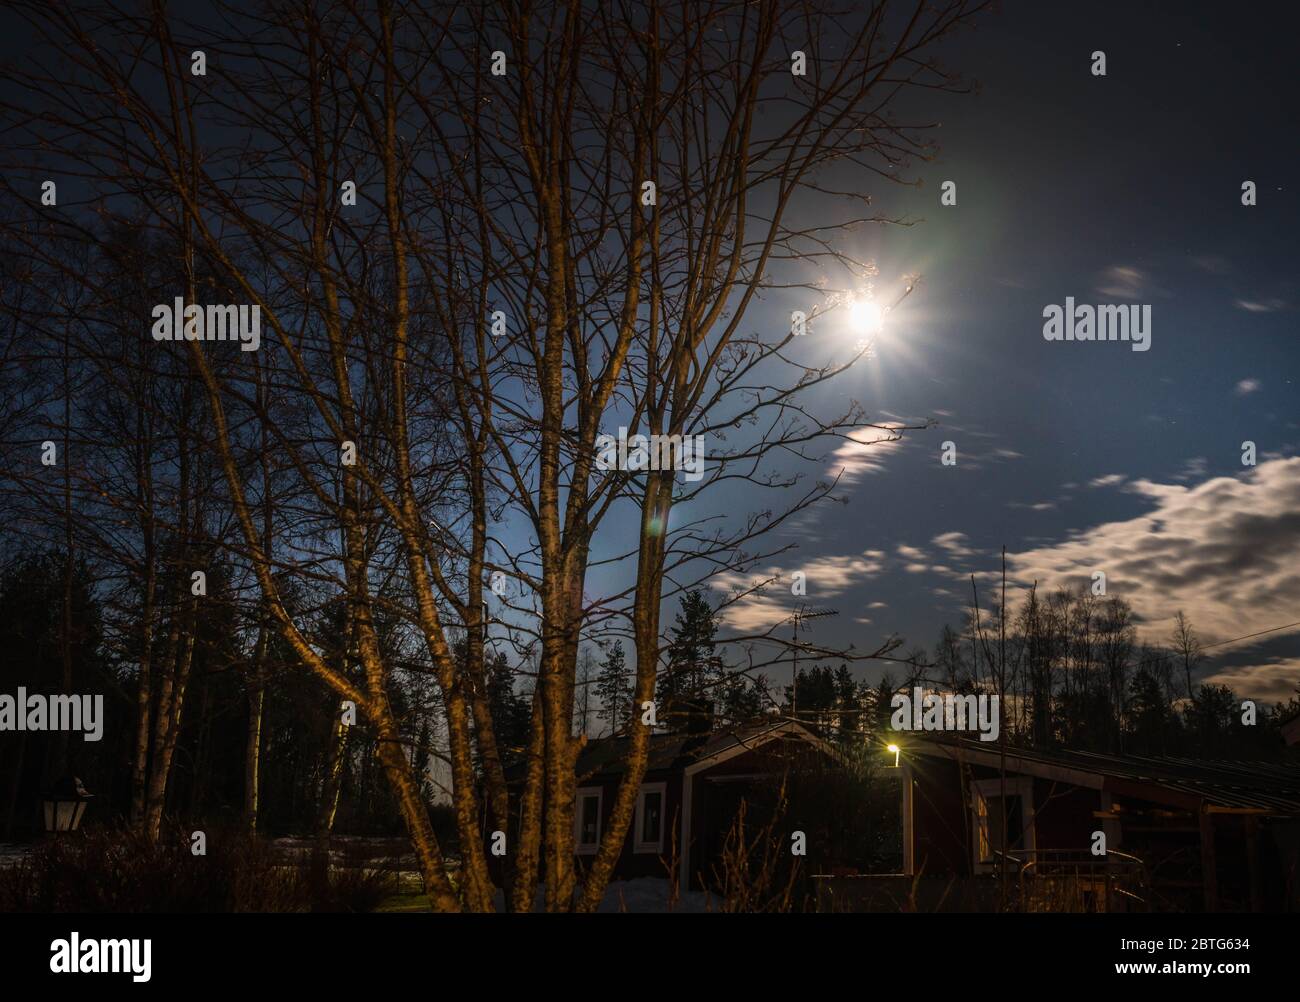 Giardino svedese di notte, luna piena accanto alle nuvole, primavera, neve d'inverno qui Foto Stock